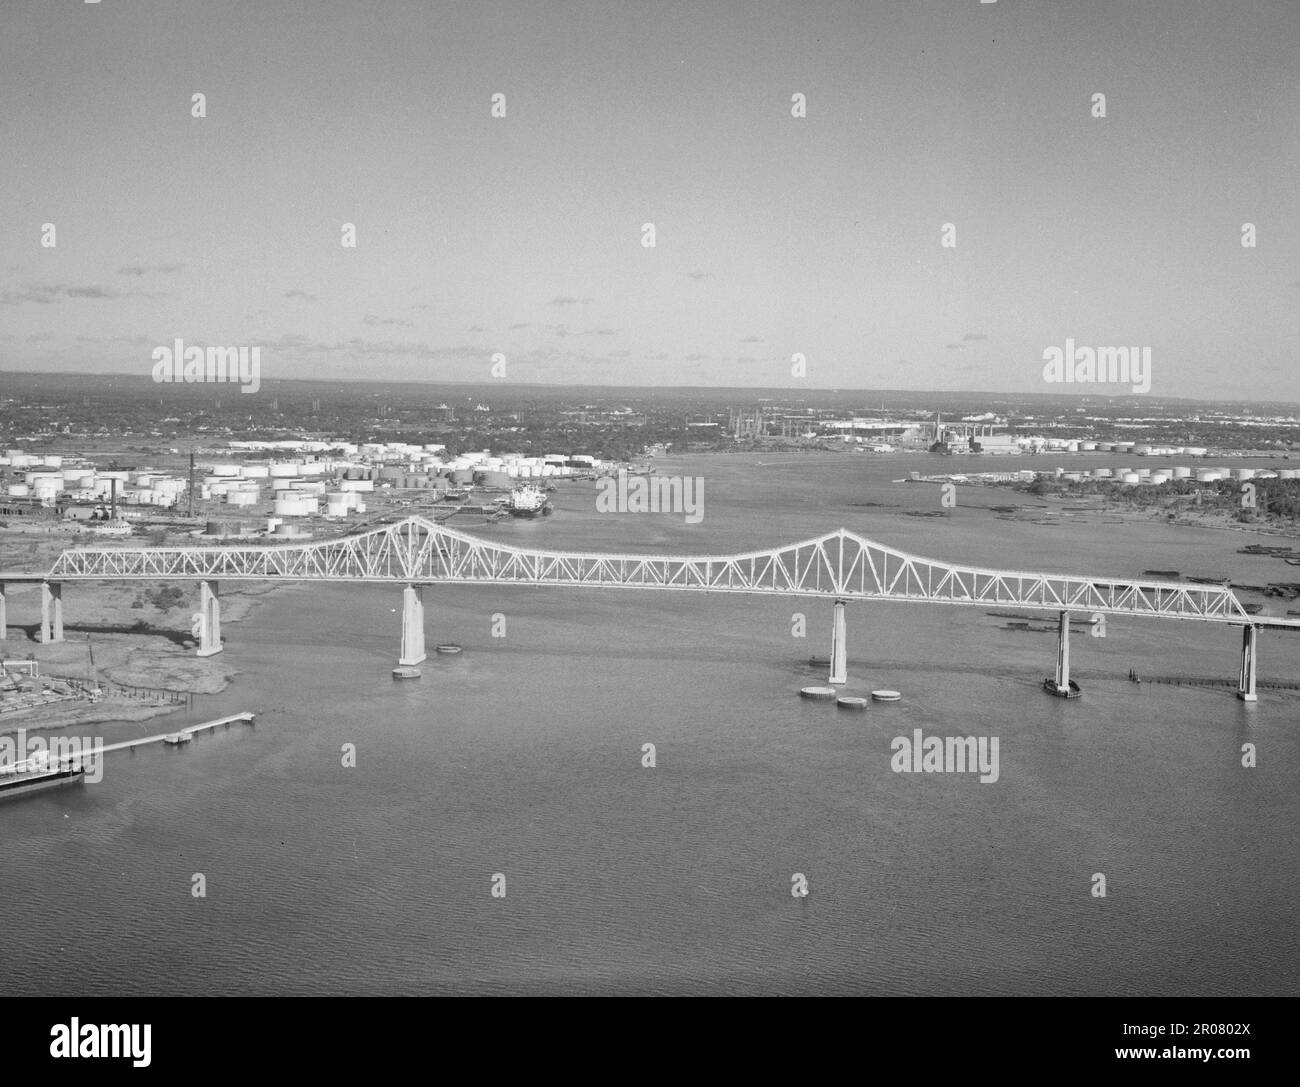 Travée en porte-à-faux du pont d'Outerbridge en élévation - pont d'Outerbridge Crossing, Spanning Arthur Kill du New Jersey à Staten Island, 1991 Banque D'Images